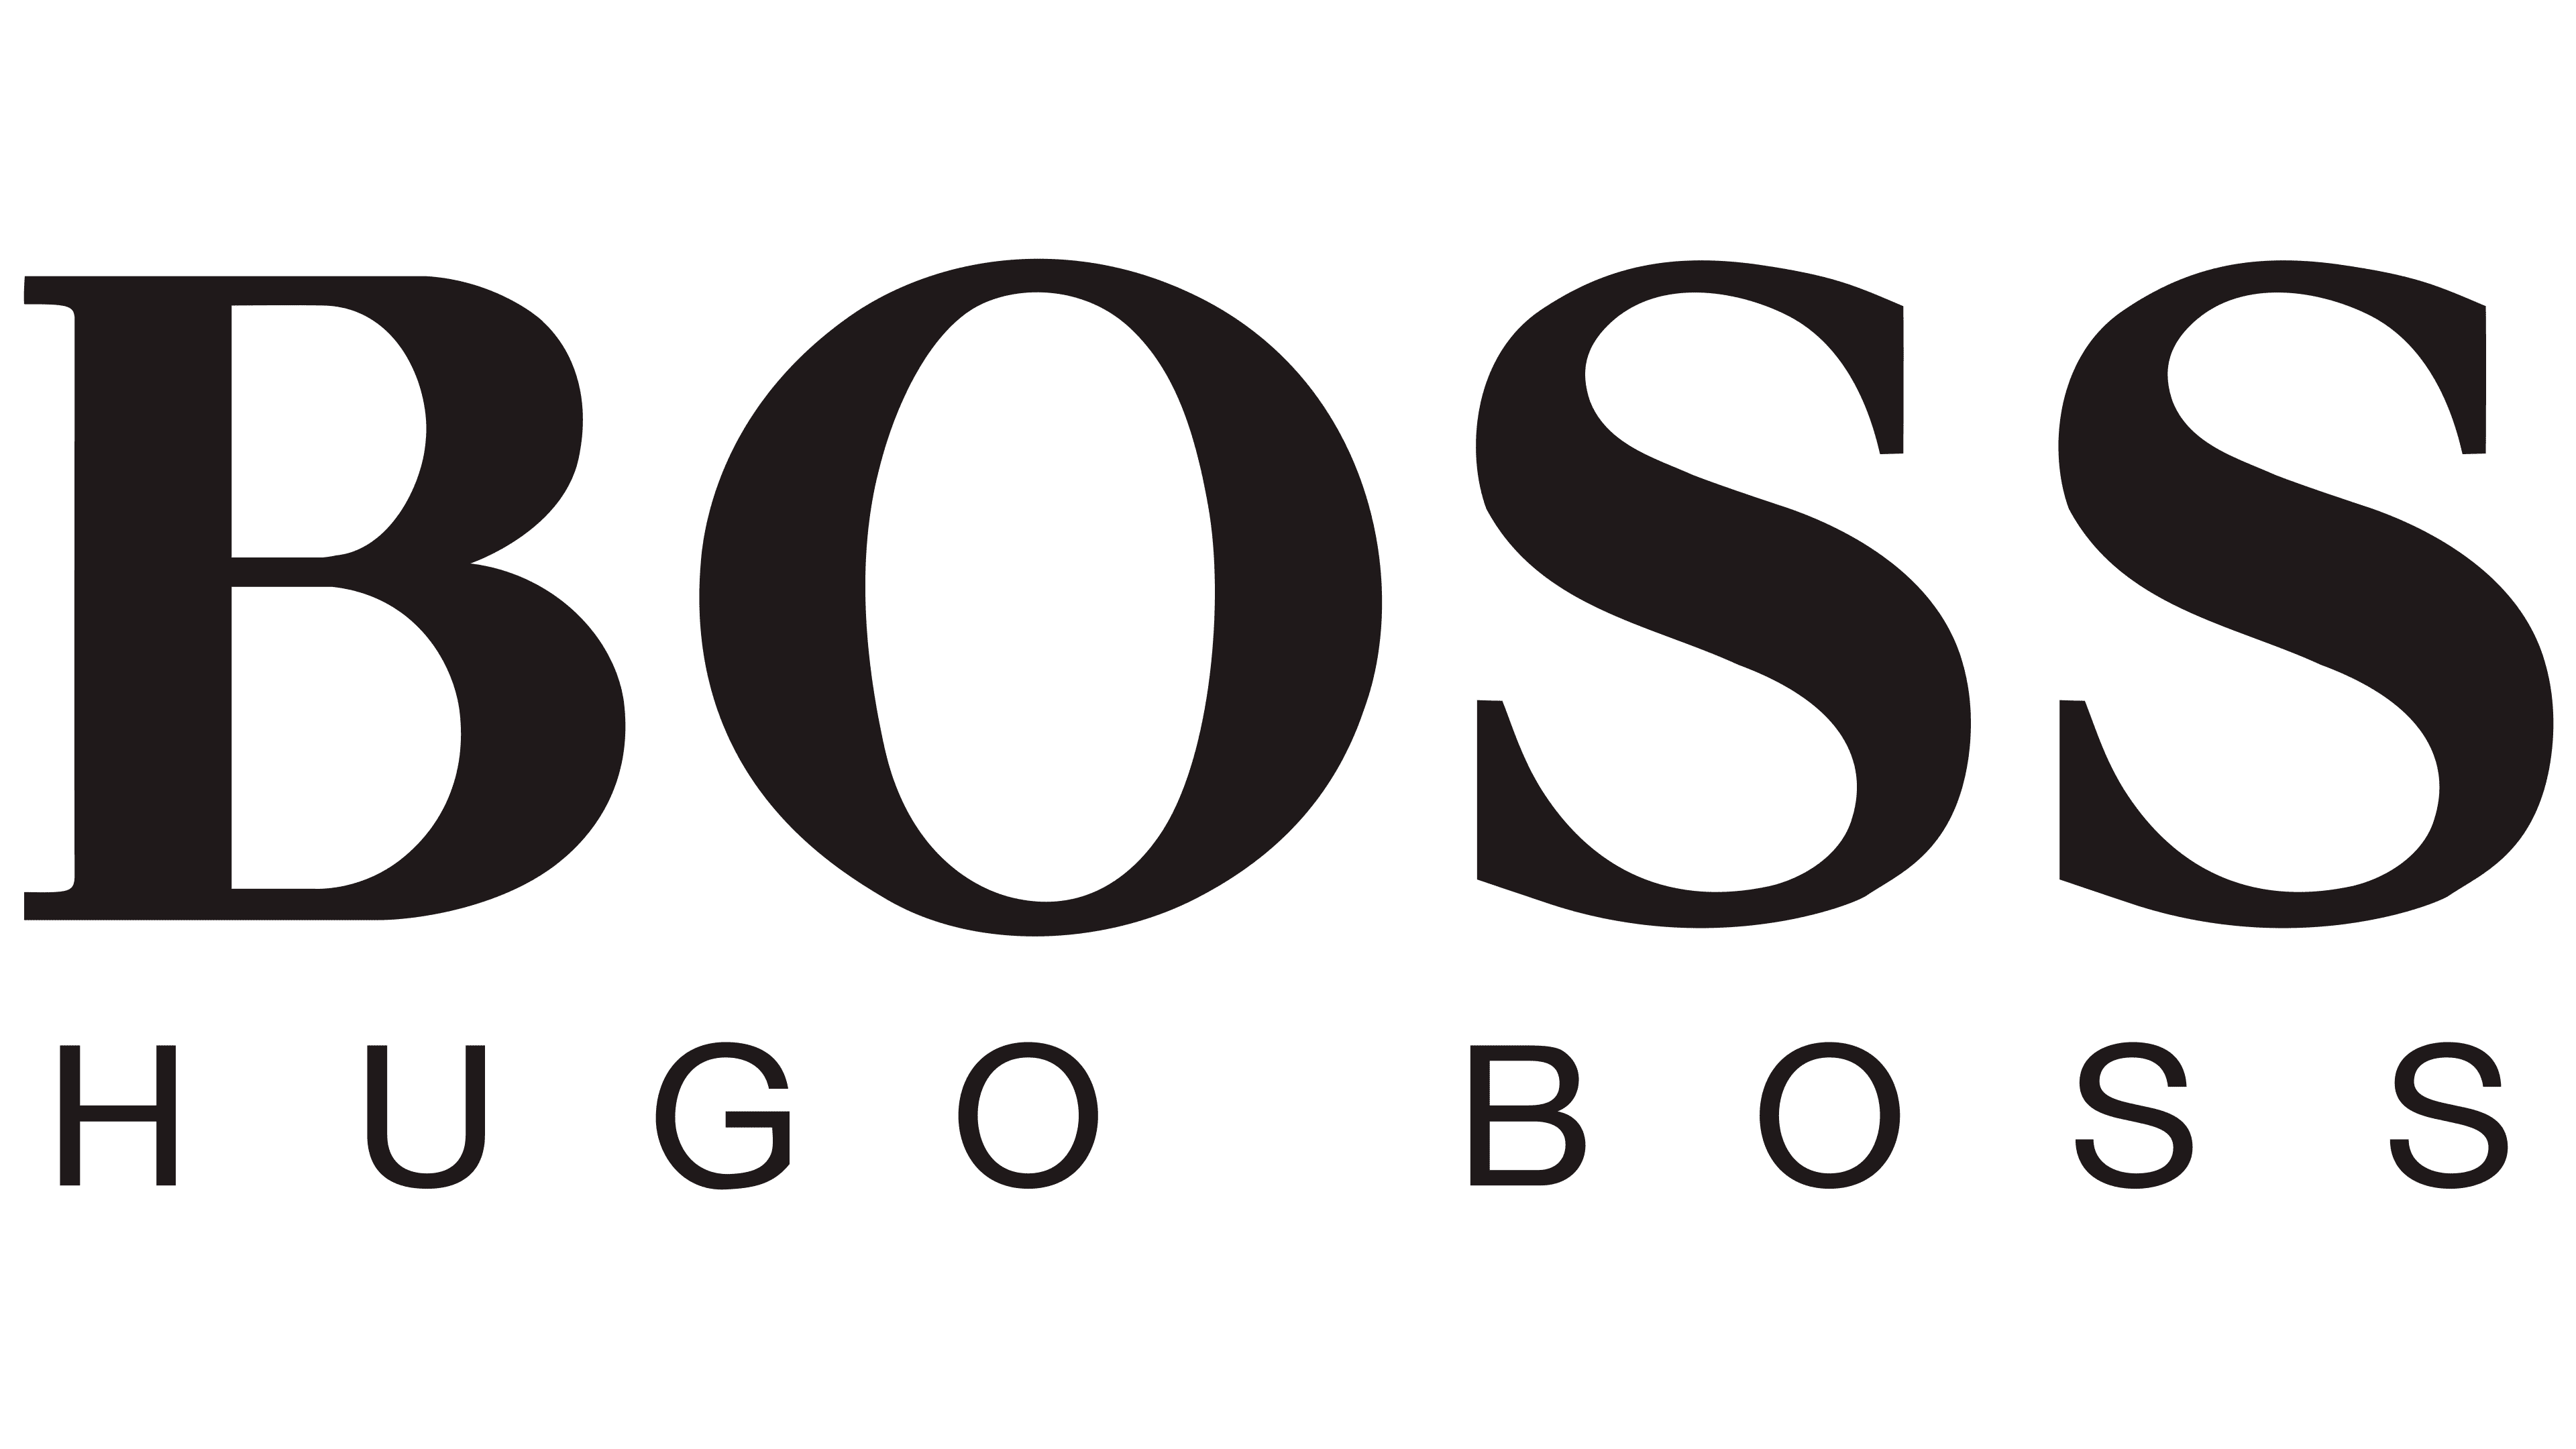 boss clothing company